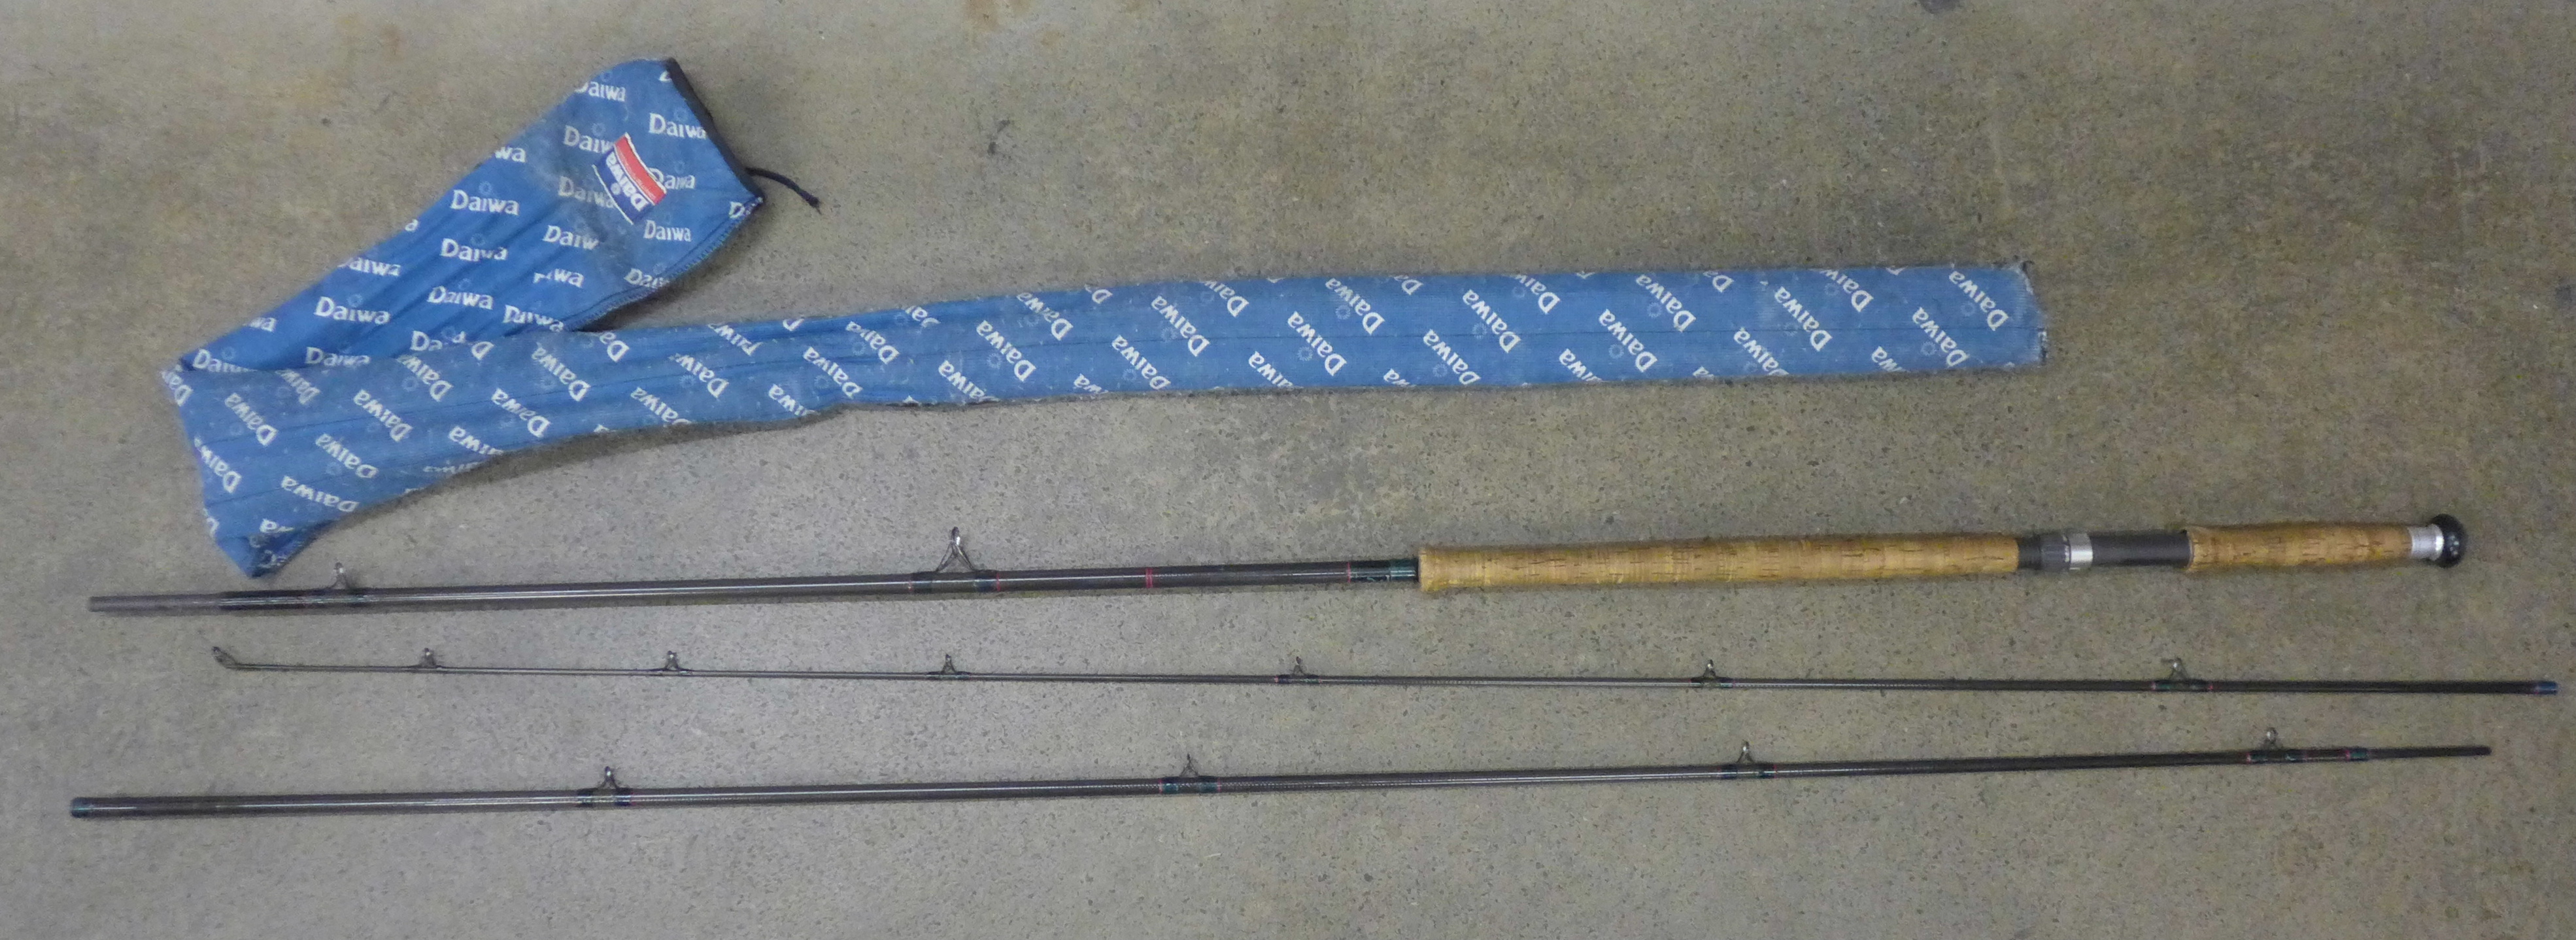 A Daiwa three piece salmon rod